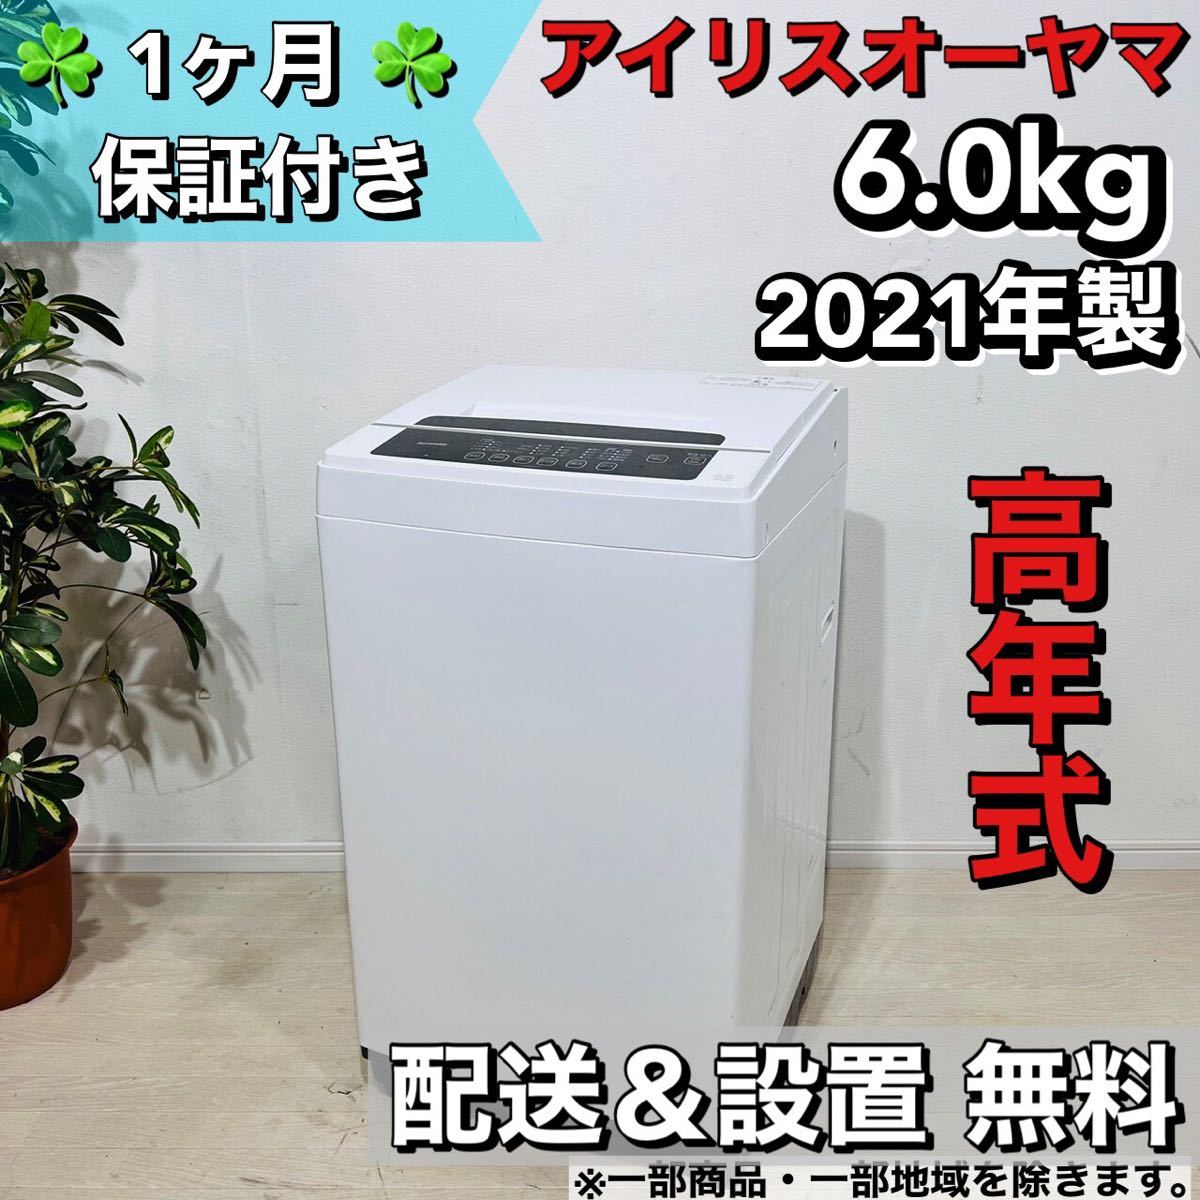 アイリスオーヤマ 洗濯機 6.0Kg - 洗濯機